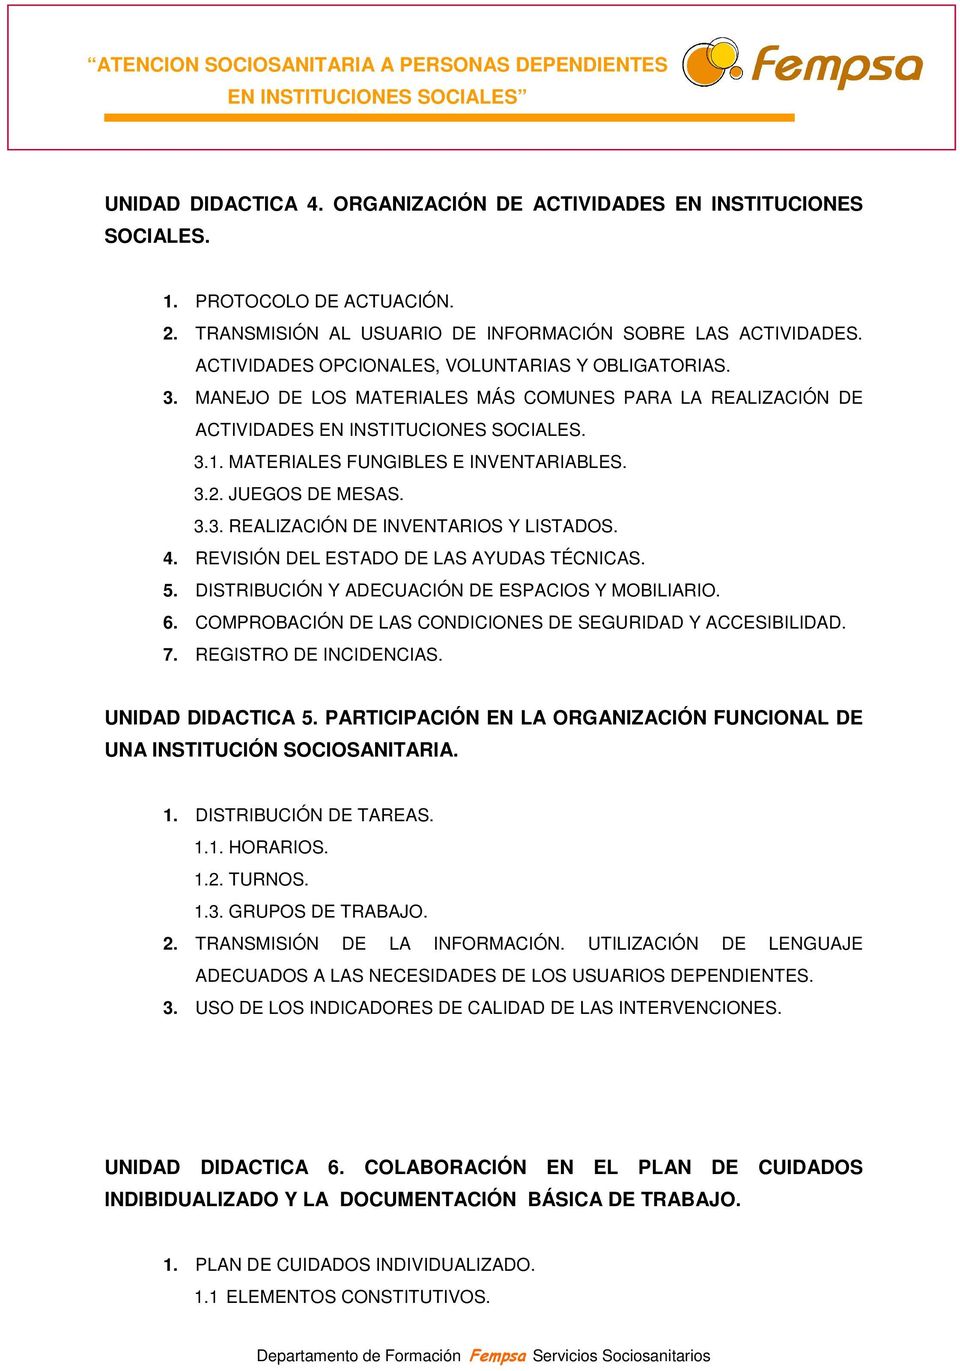 JUEGOS DE MESAS. 3.3. REALIZACIÓN DE INVENTARIOS Y LISTADOS. 4. REVISIÓN DEL ESTADO DE LAS AYUDAS TÉCNICAS. 5. DISTRIBUCIÓN Y ADECUACIÓN DE ESPACIOS Y MOBILIARIO. 6.